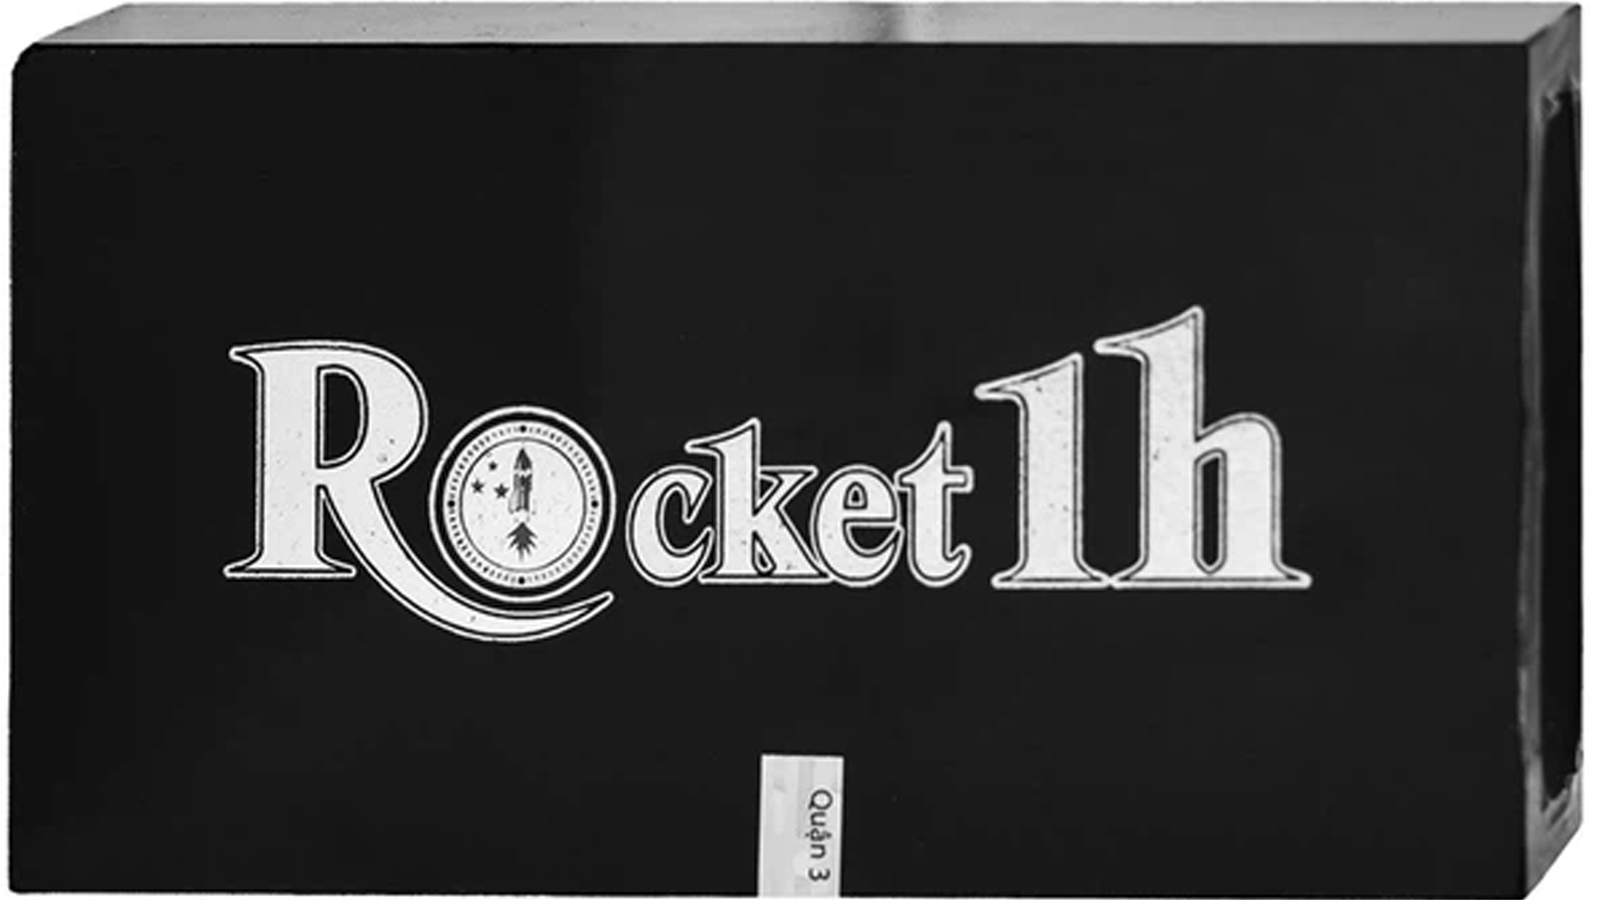 Rocket 1h được làm từ những thành phần gì?
